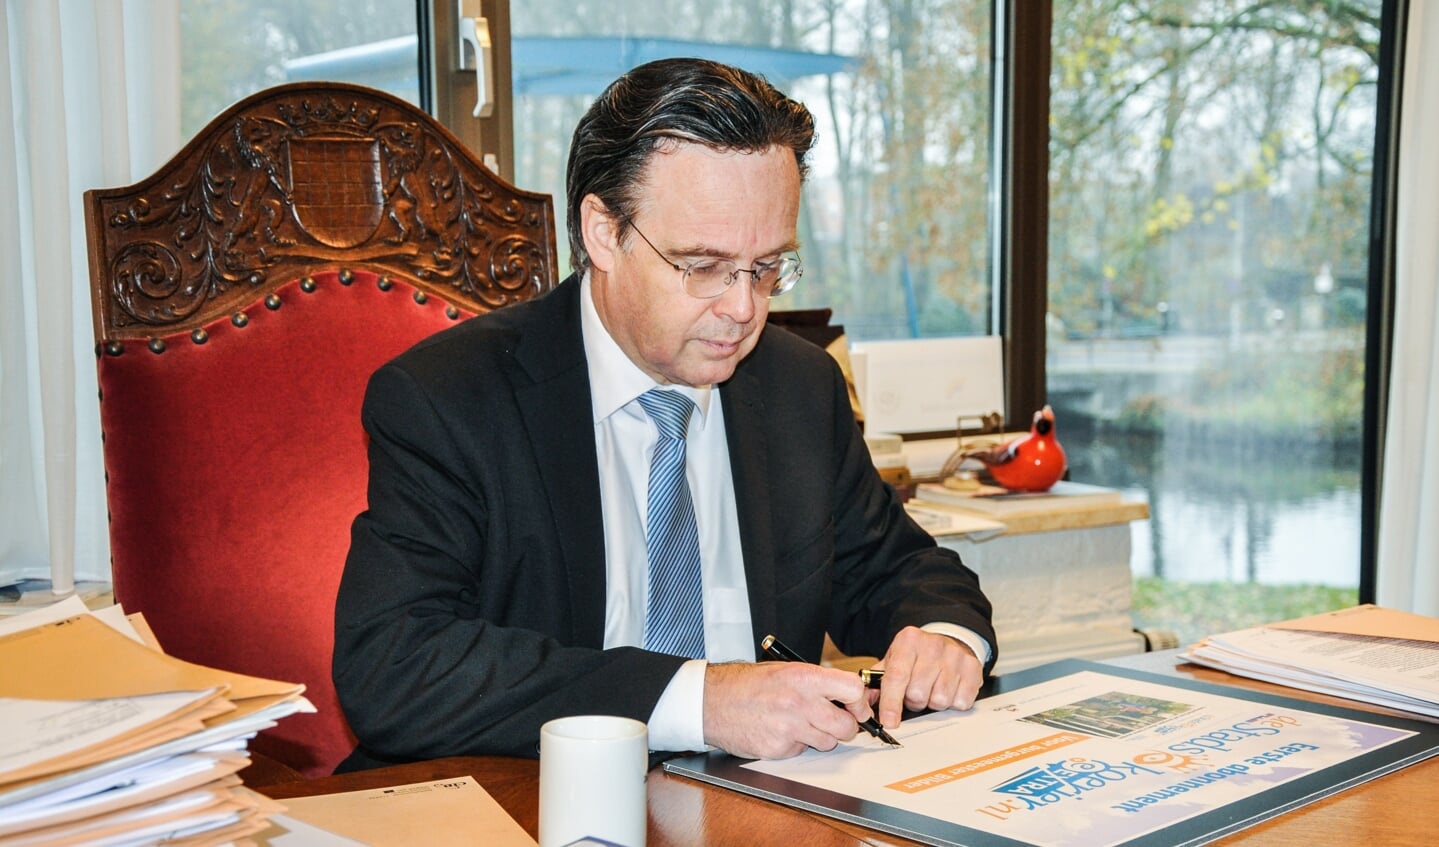 Burgemeester Eddy Bilder zet zijn handtekening voor het eerste lidmaatschap van de uitgebreide versie van De Stadskoerier.